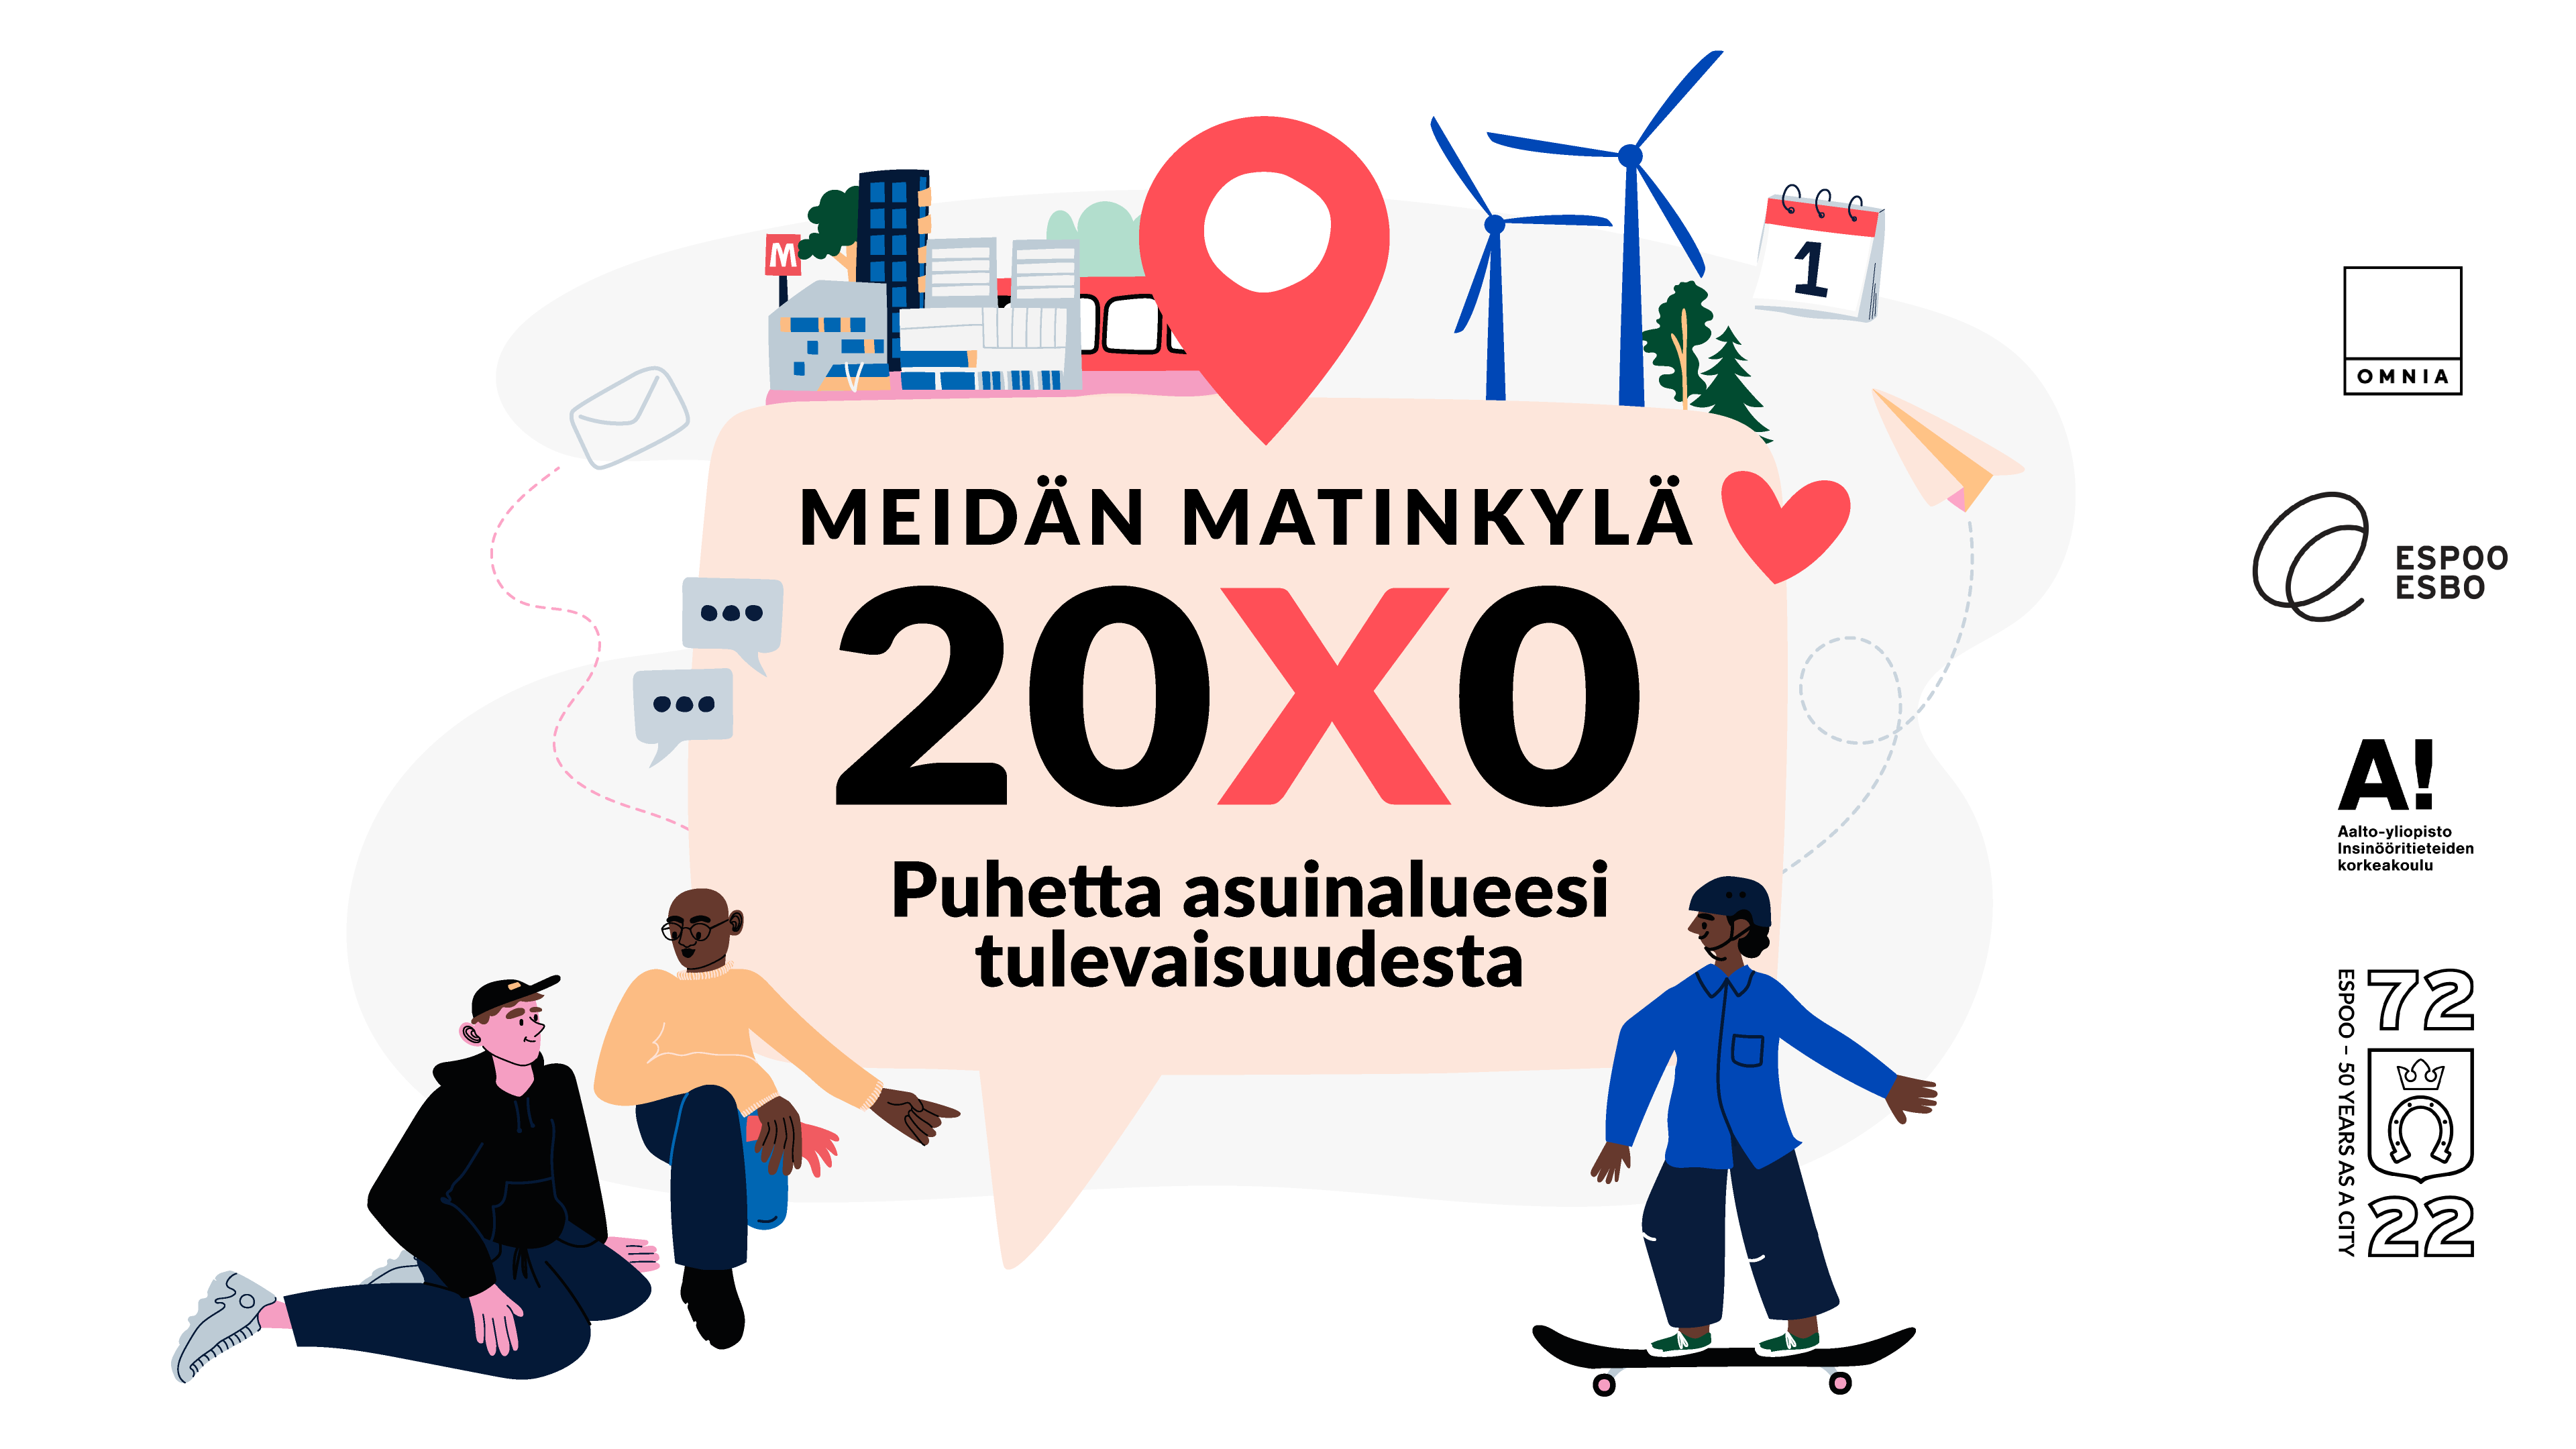 Kuvassa Ihmisiä Tulevaisuuden Espoossa. Kuvan keskellä myös teksti, jossa lukee "Meidän Matinkylä 20X0, puhetta asuinalueesi tulevaisuudesta".